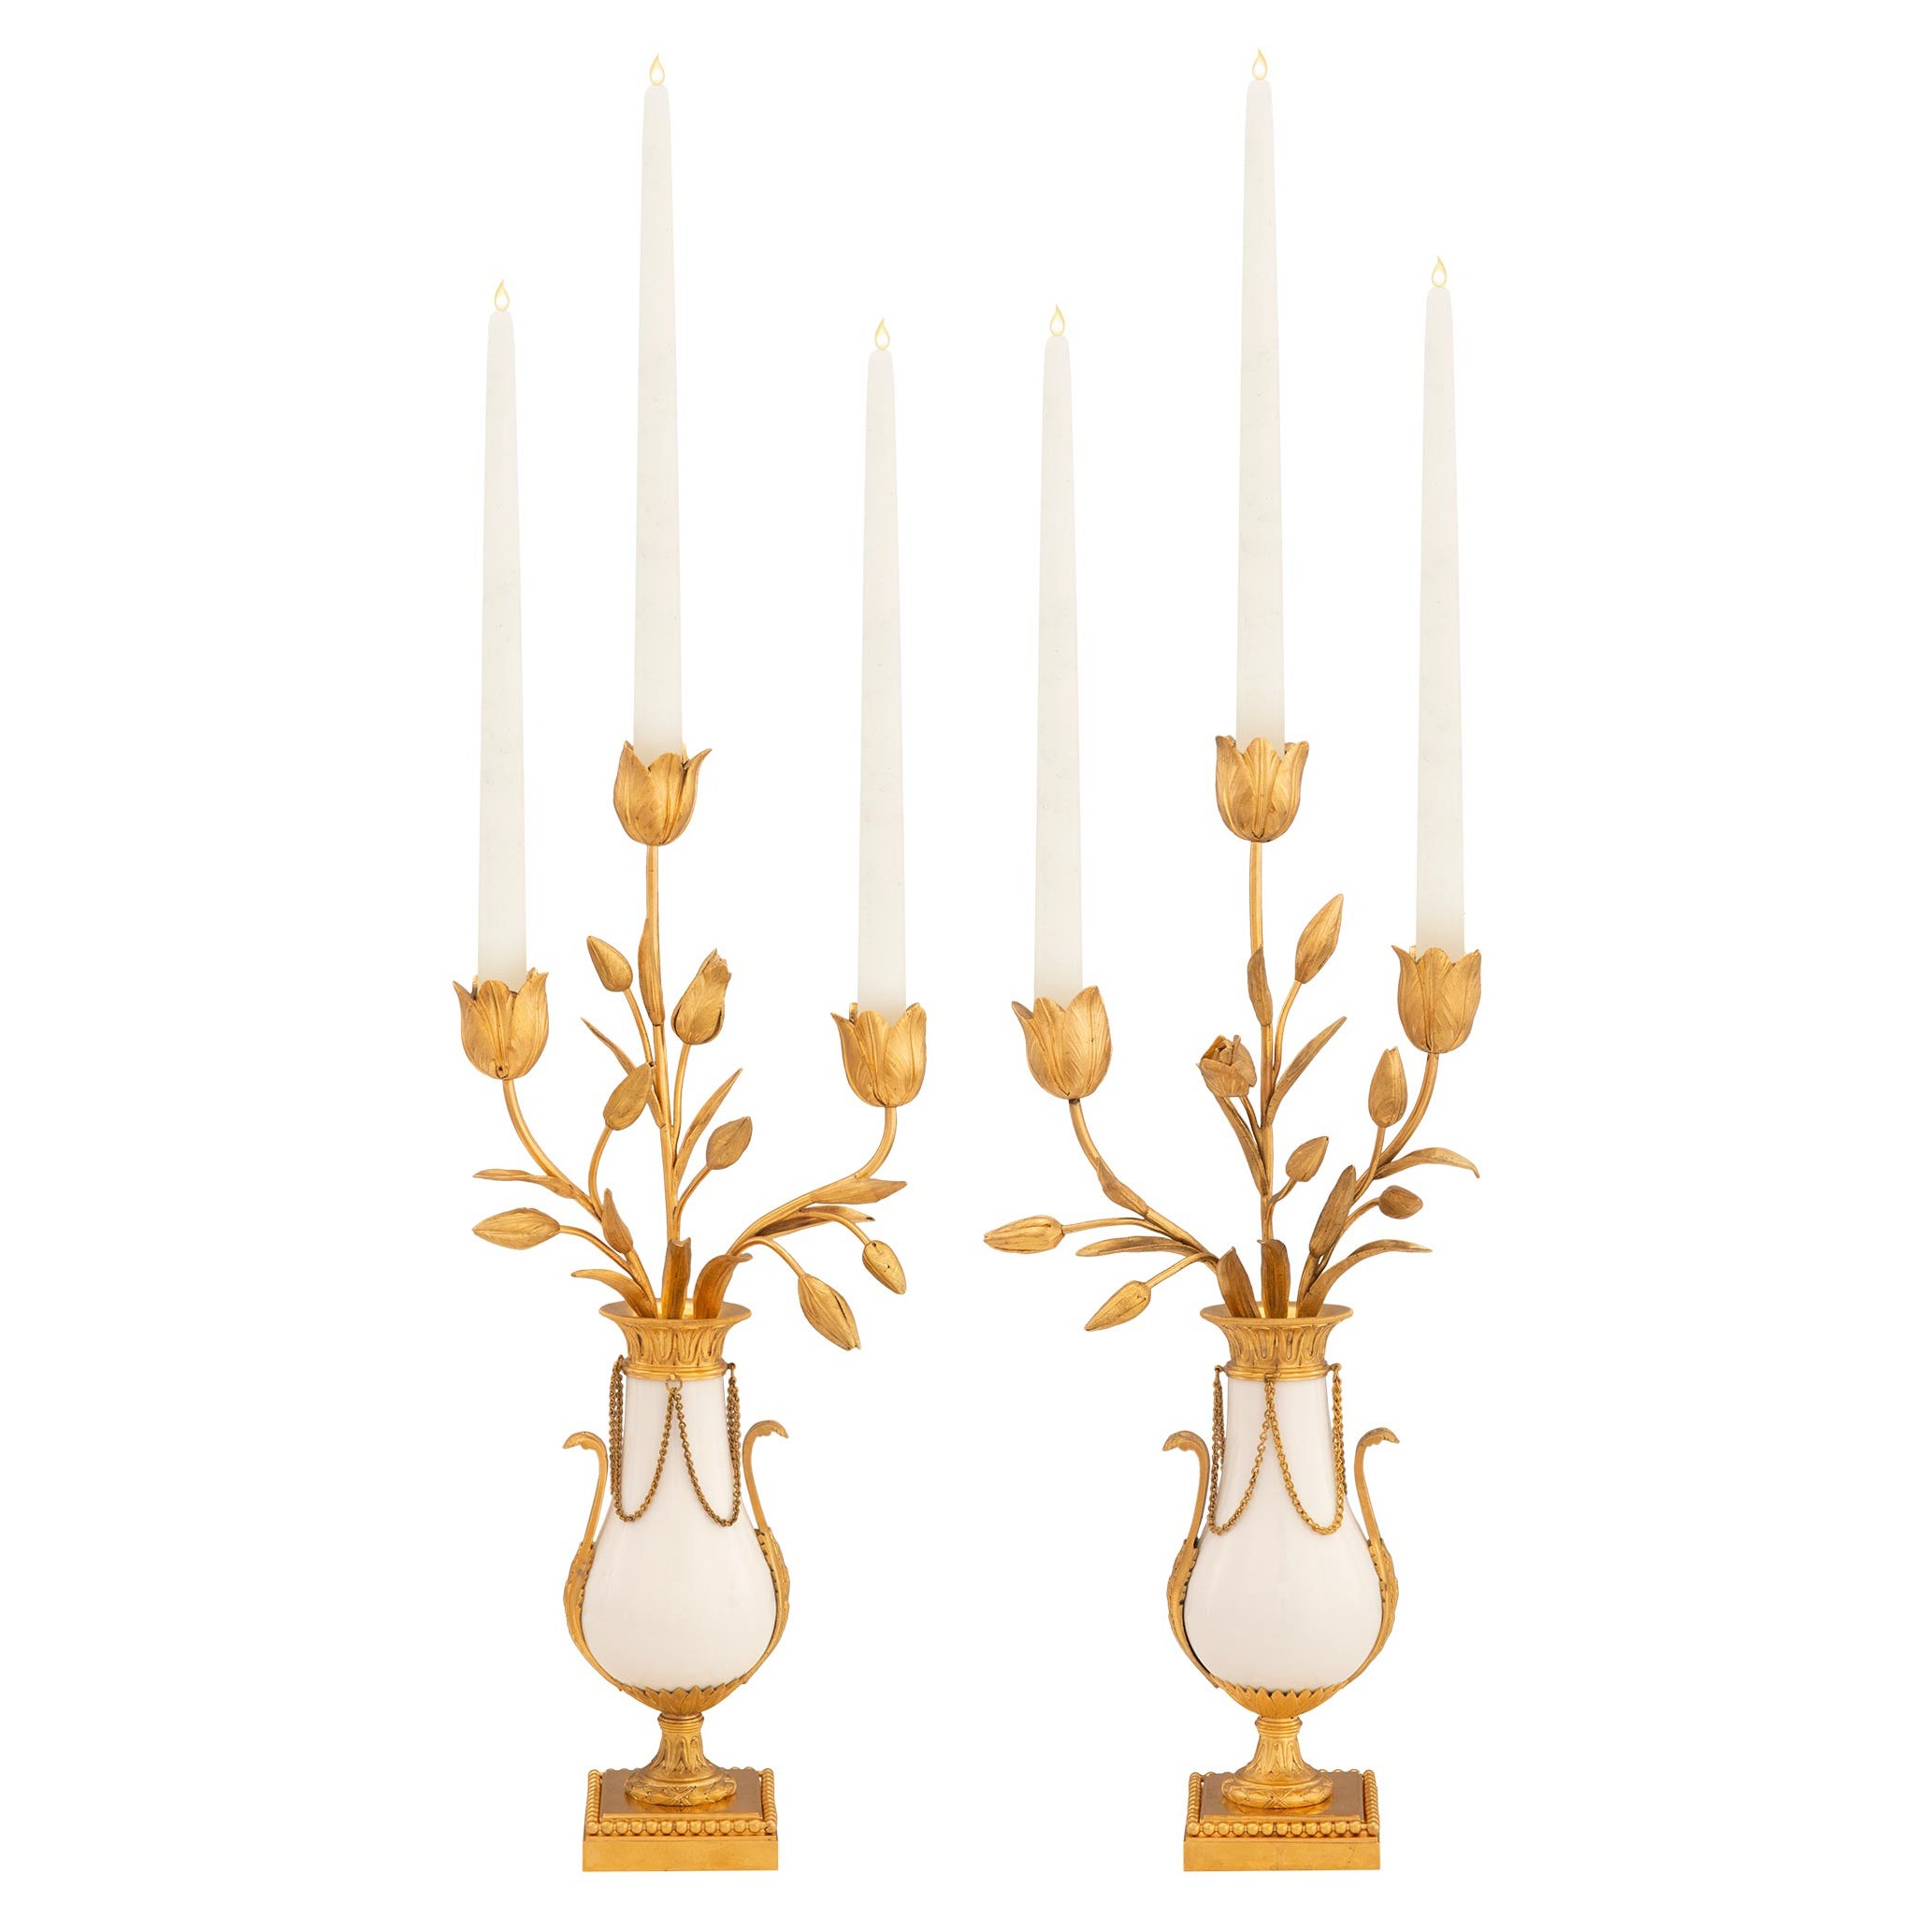 Paire de candélabres français du 19ème siècle de style Louis XVI en bronze doré et marbre